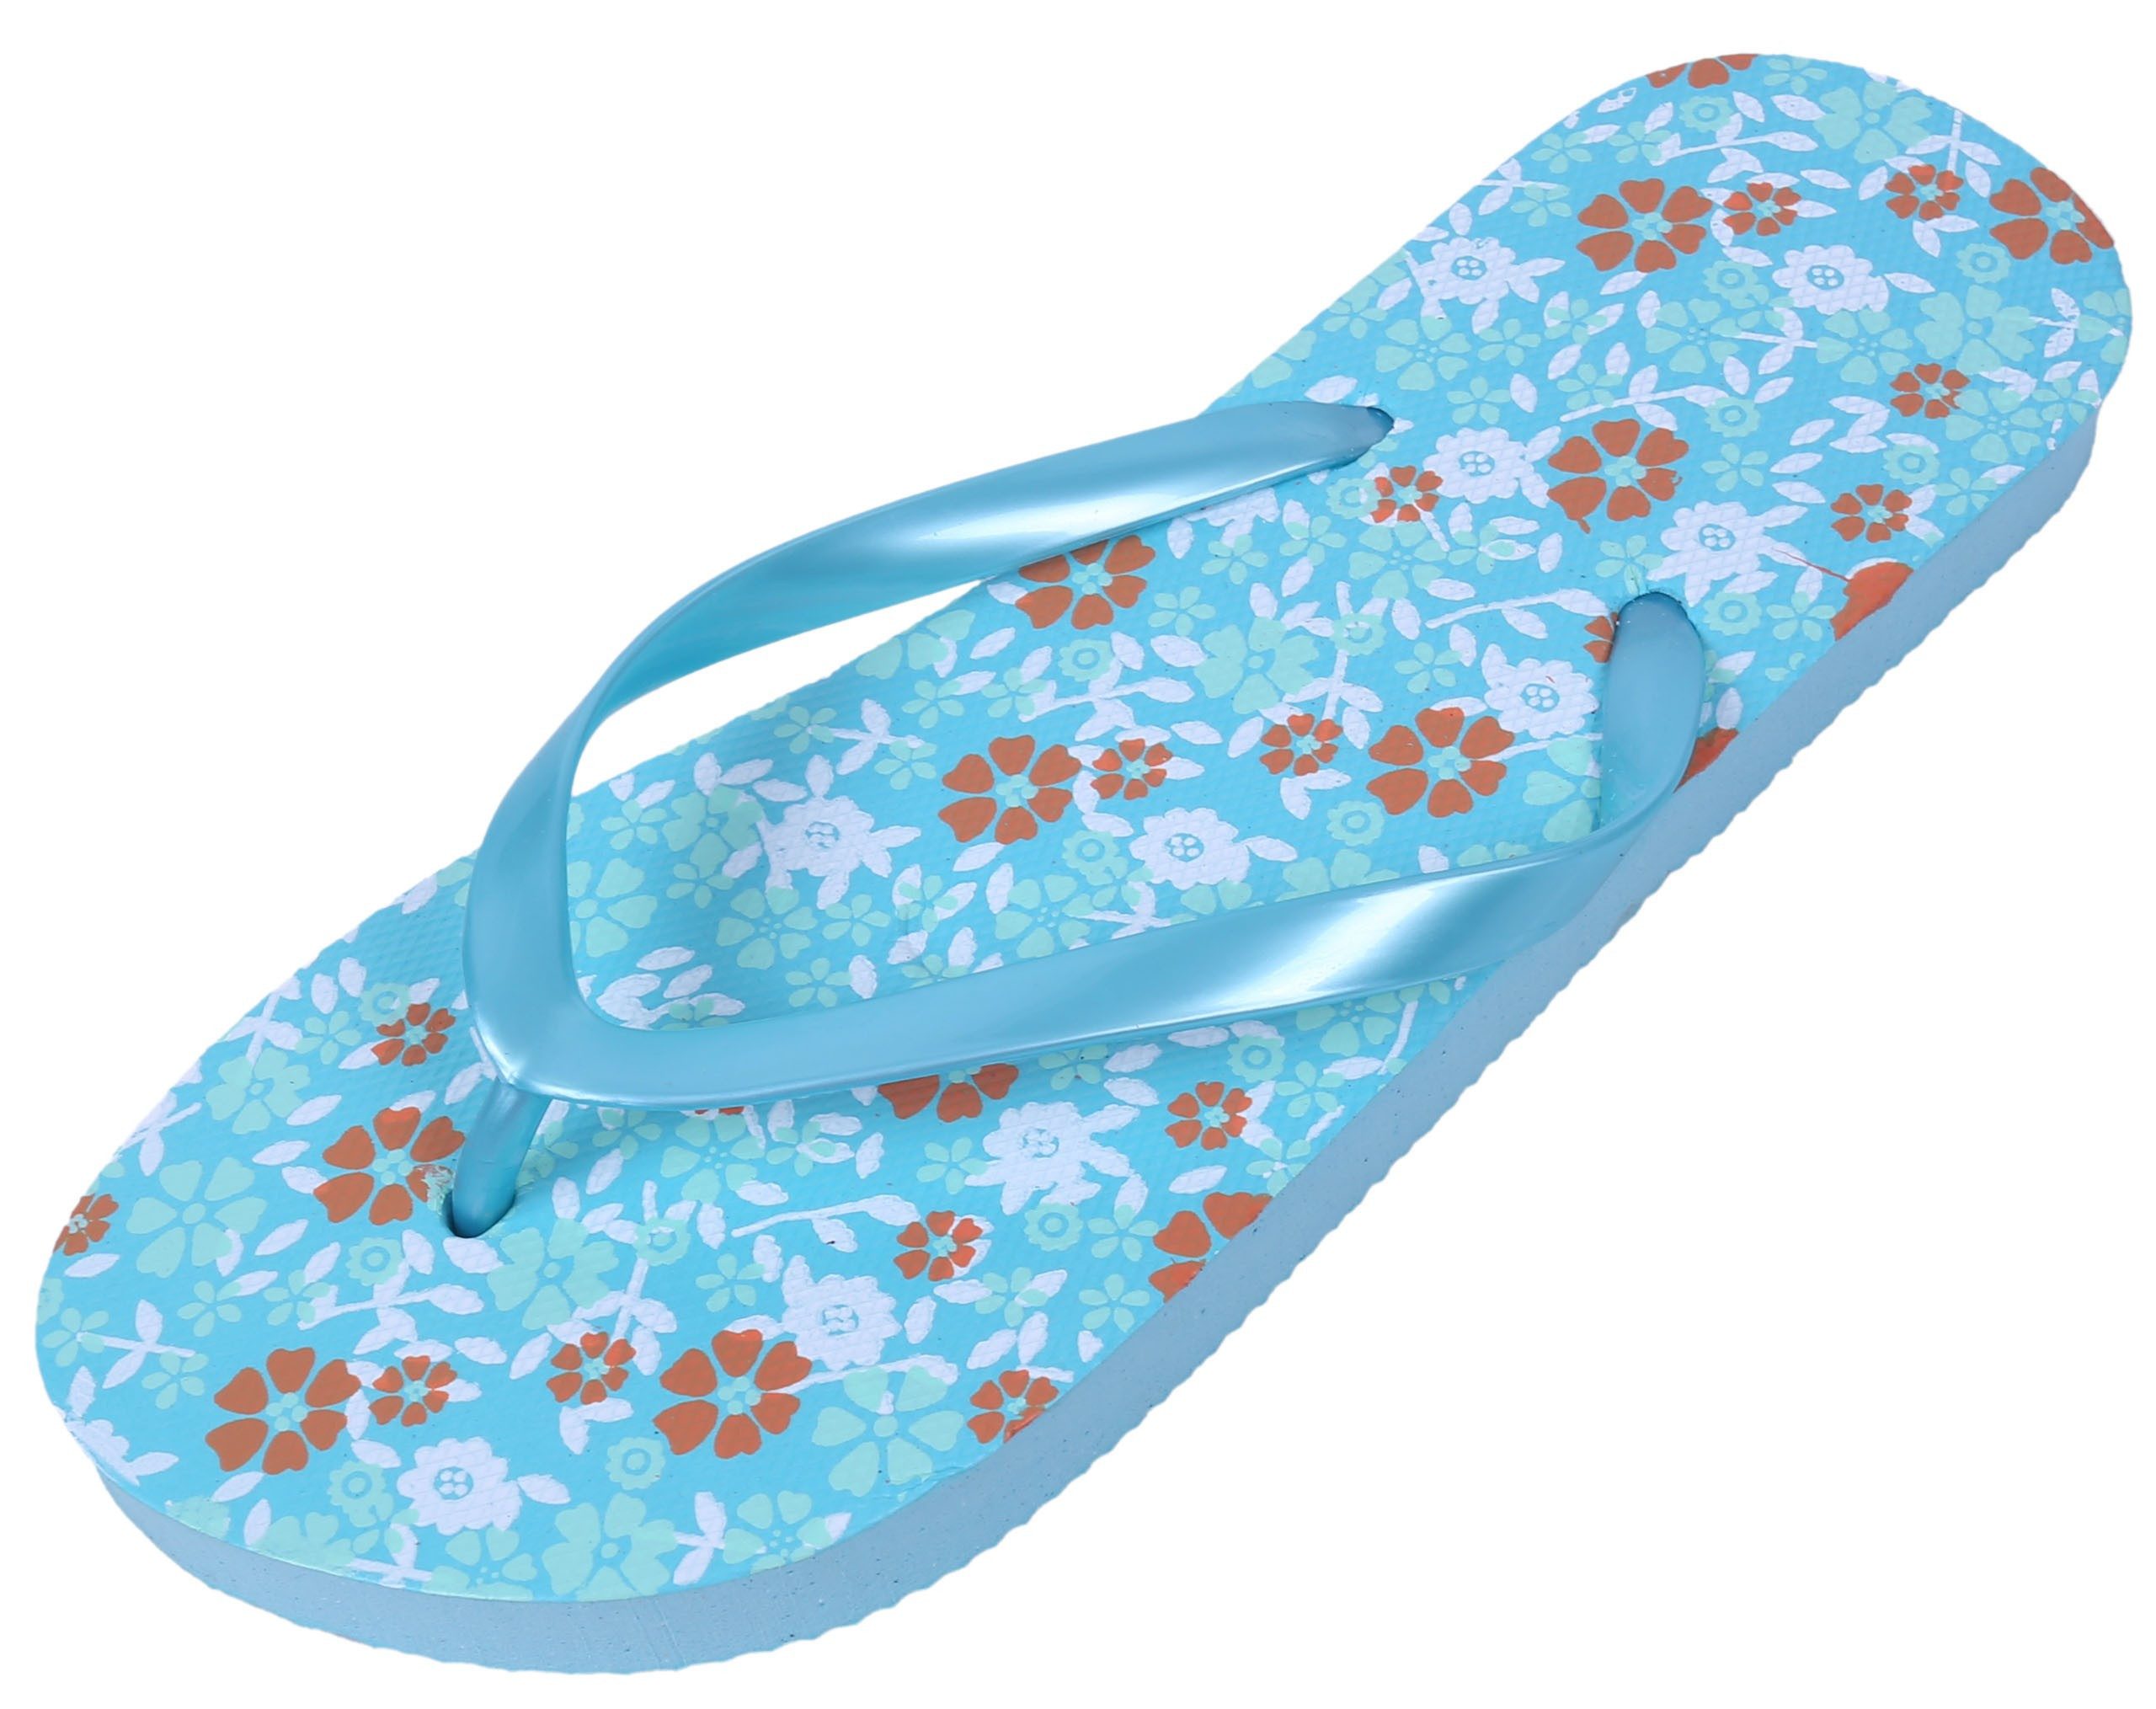 Sarcia.eu Blaue Flip-Flops für Damen mit Blumen gemustert 36-37 EU / 3-4 UK Badezehentrenner